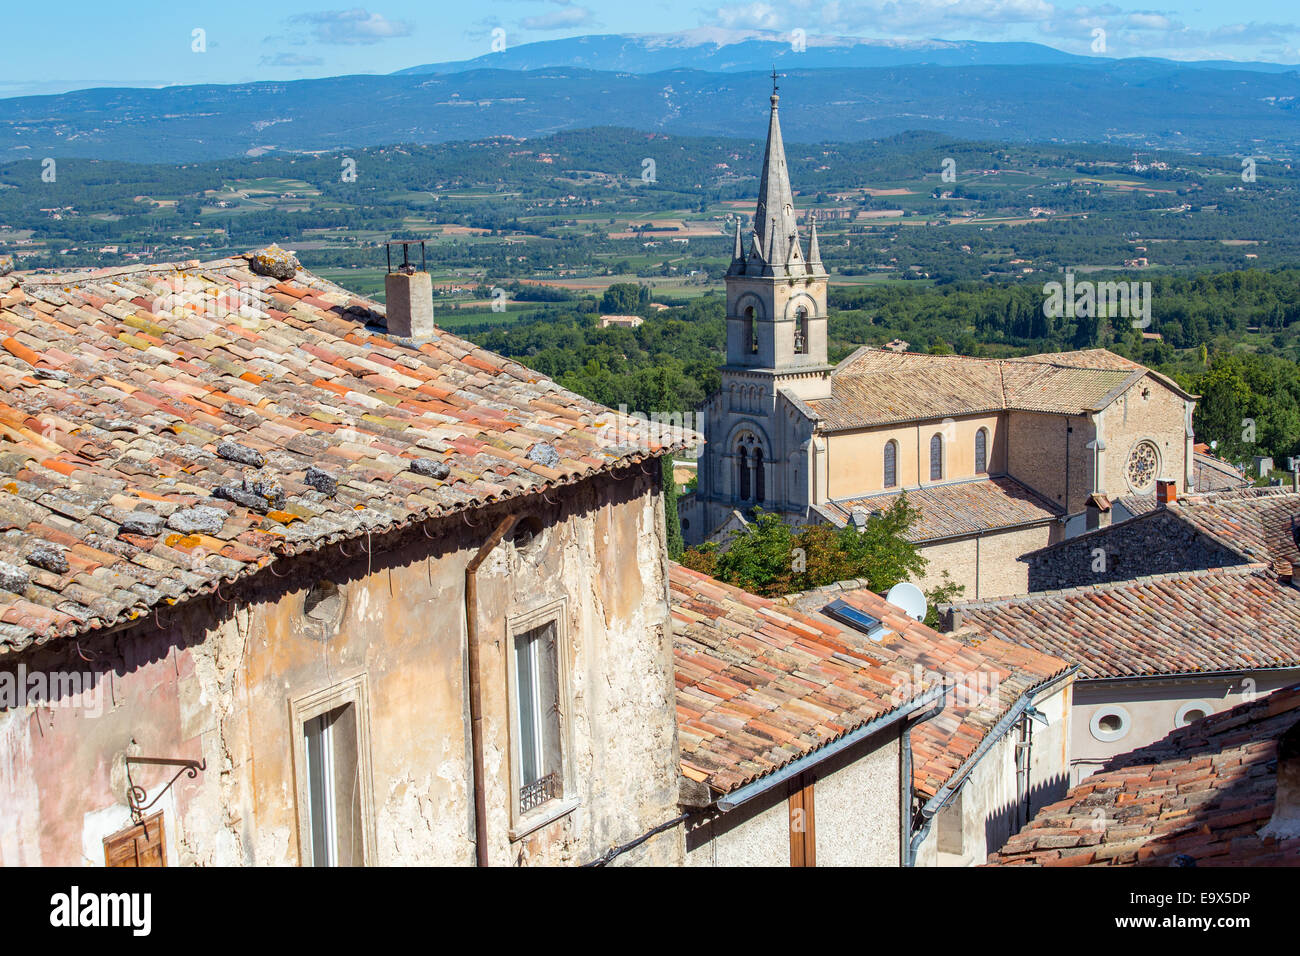 Village de Bonnieux, Luberon, Provence, France Banque D'Images